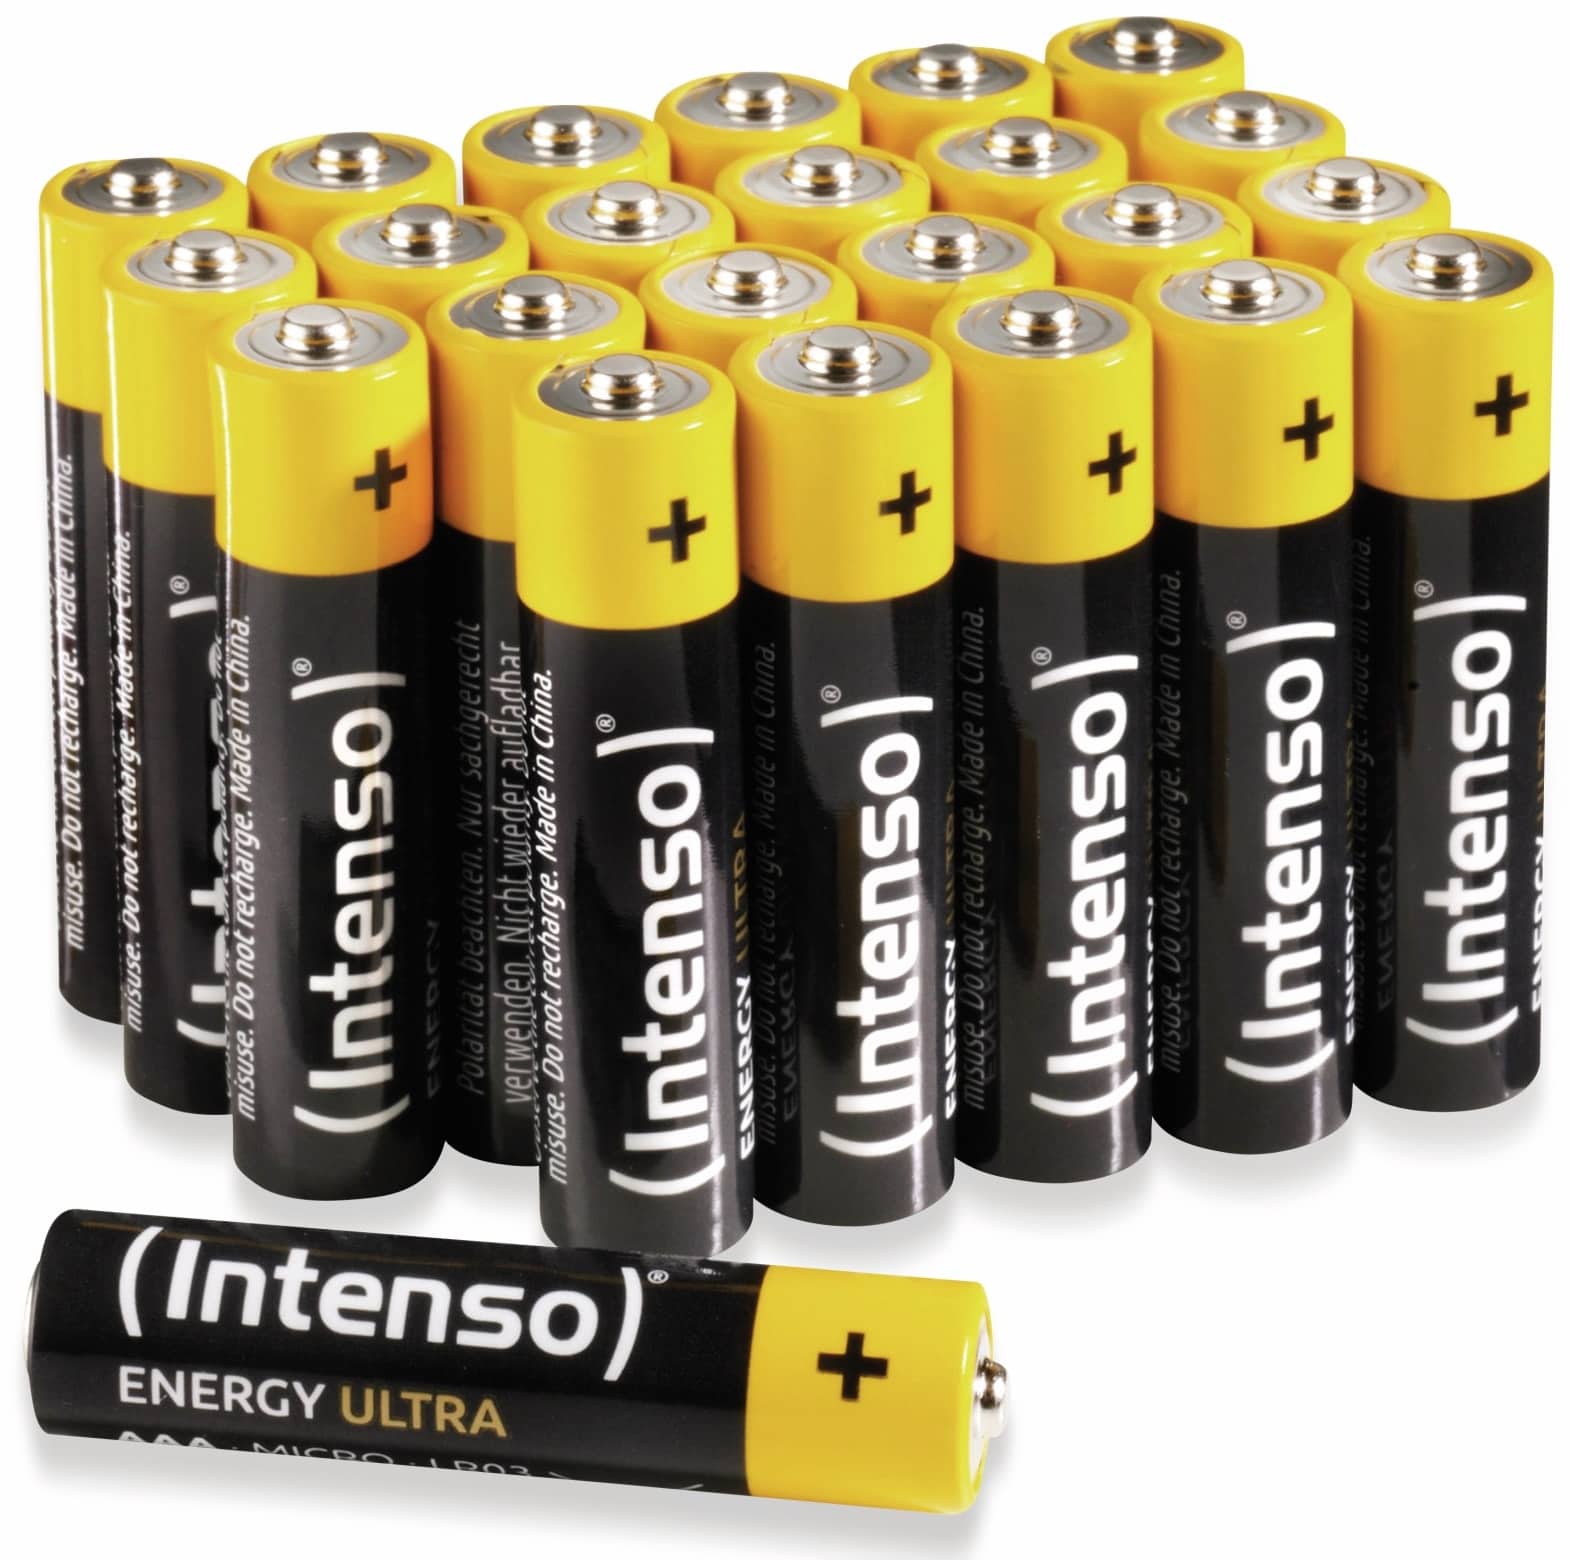 INTENSO Batterie-Set Energy Ultra, AAA LR03, 24 Stück